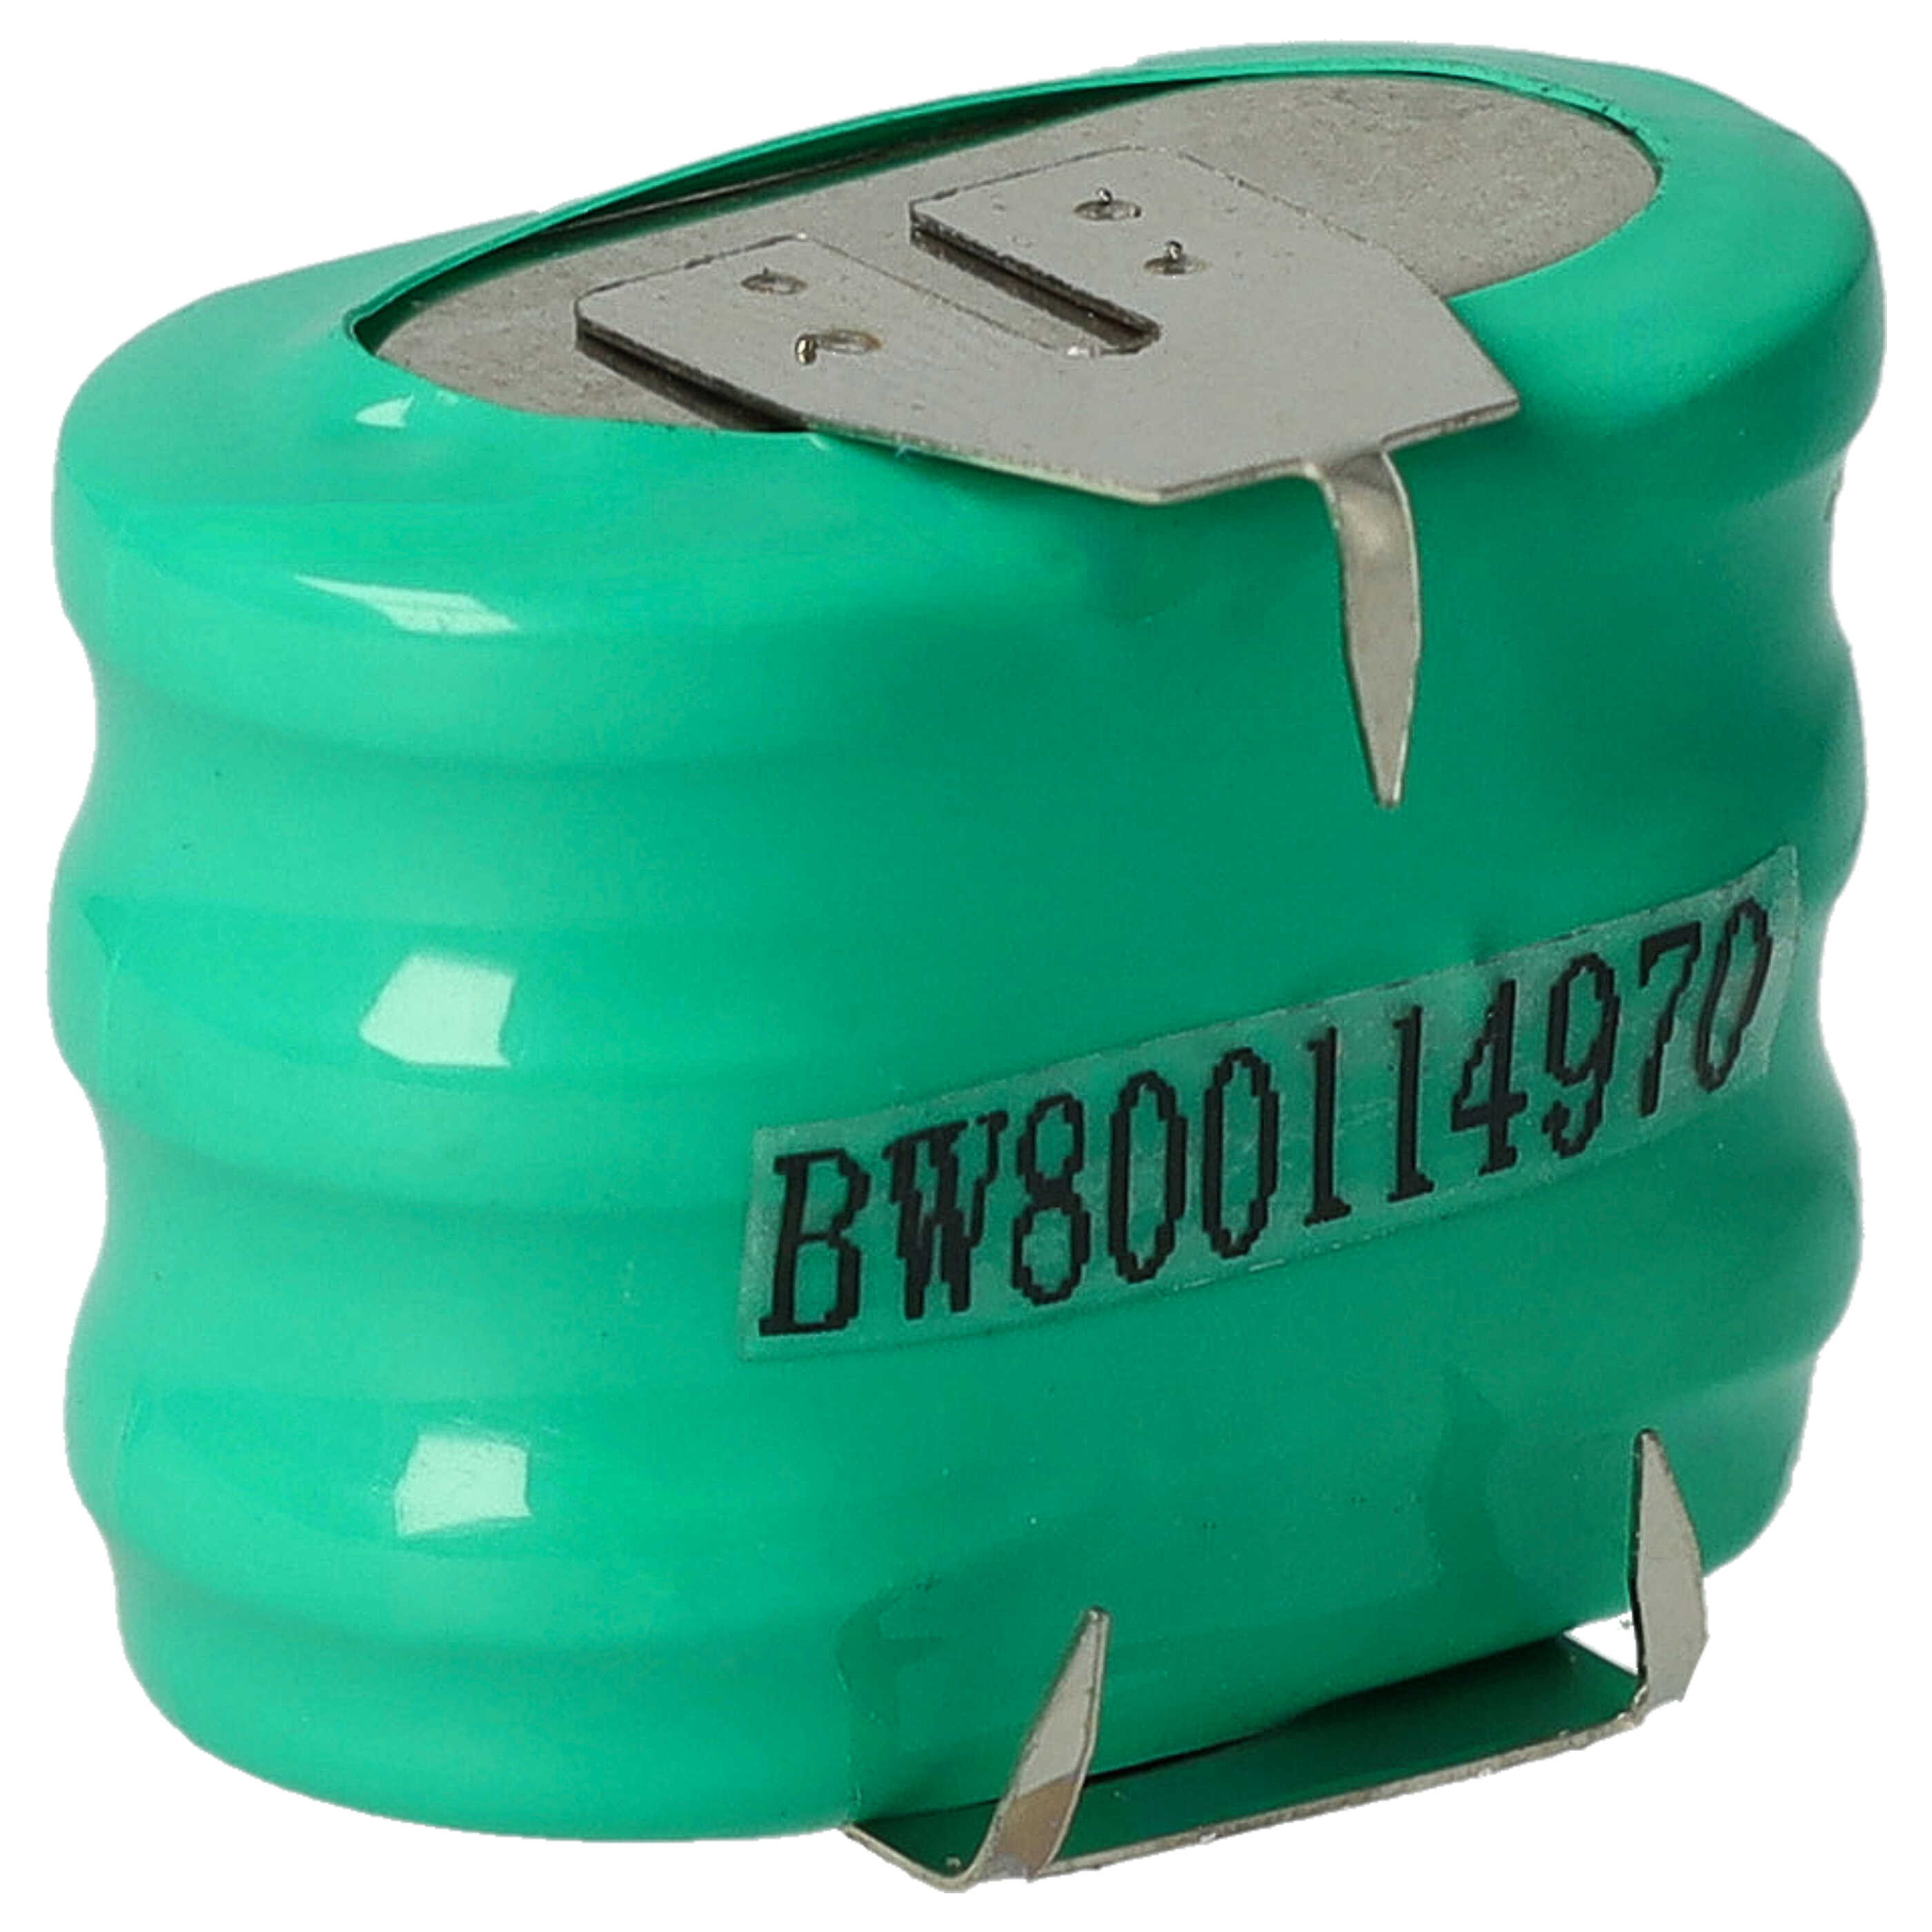 Batteria a bottone (3x cella) tipo 3/V150H 3 pin sostituisce 3/V150H per modellismo, luci solari ecc. 